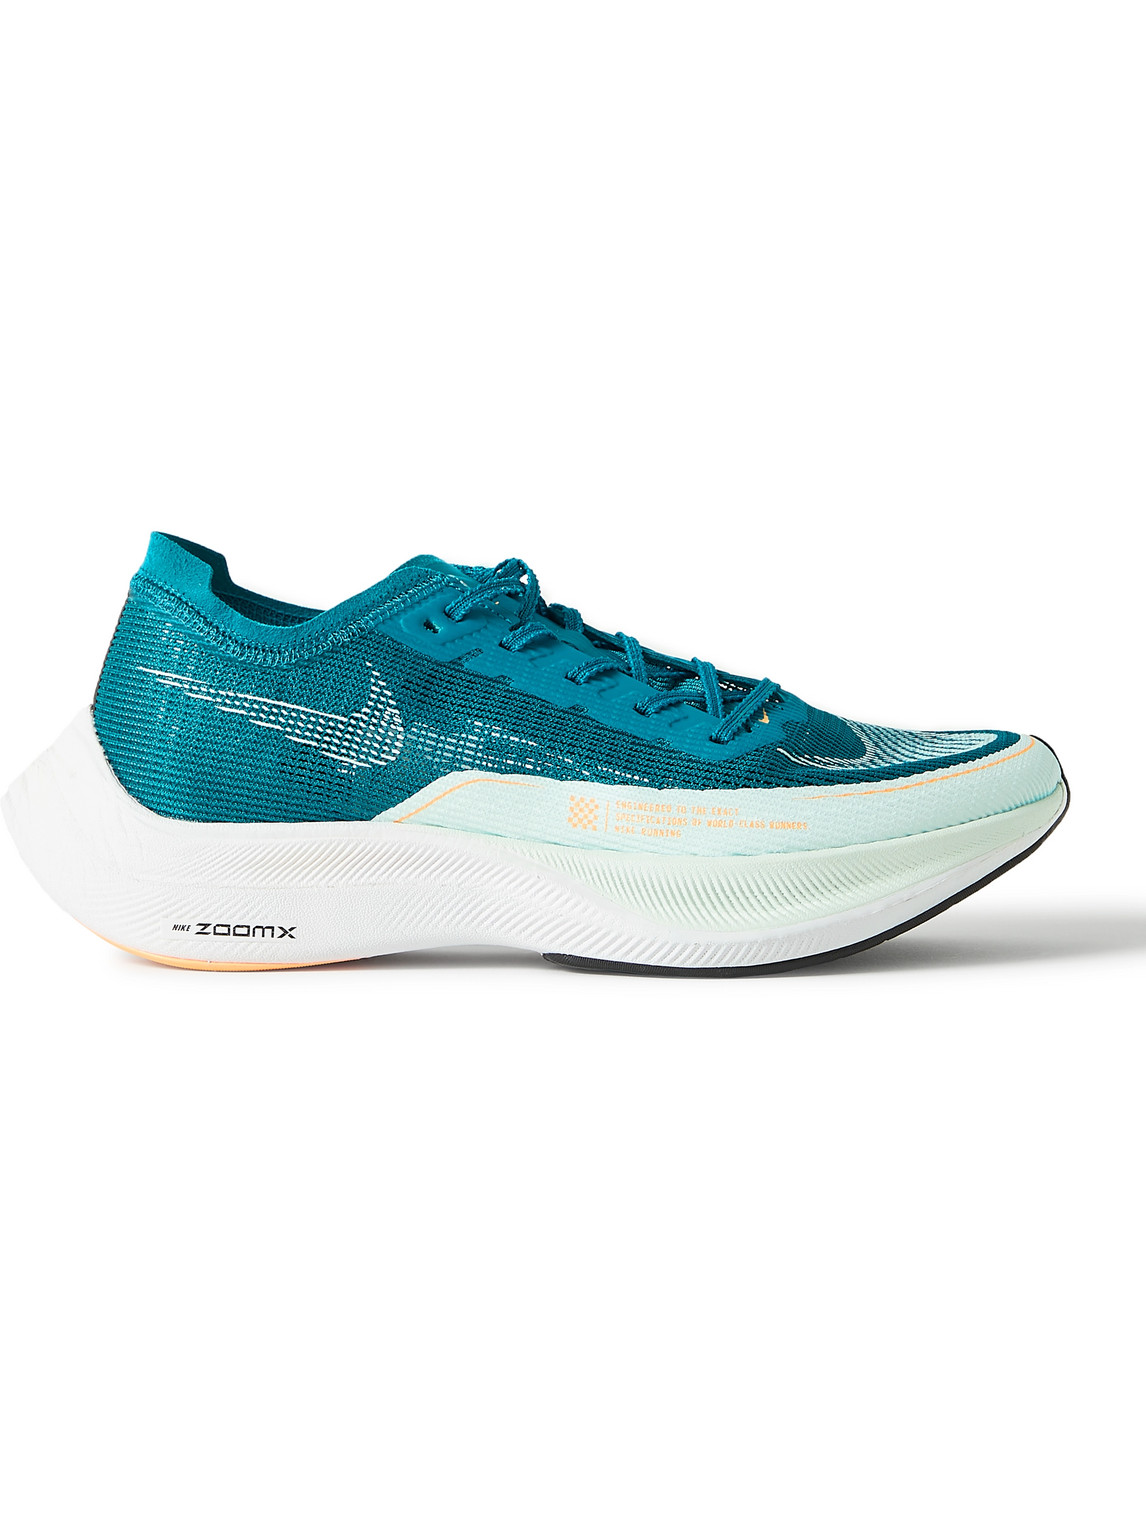 Nike Running ZoomX Vaporfly Next% 2 Mesh Running Sneakers